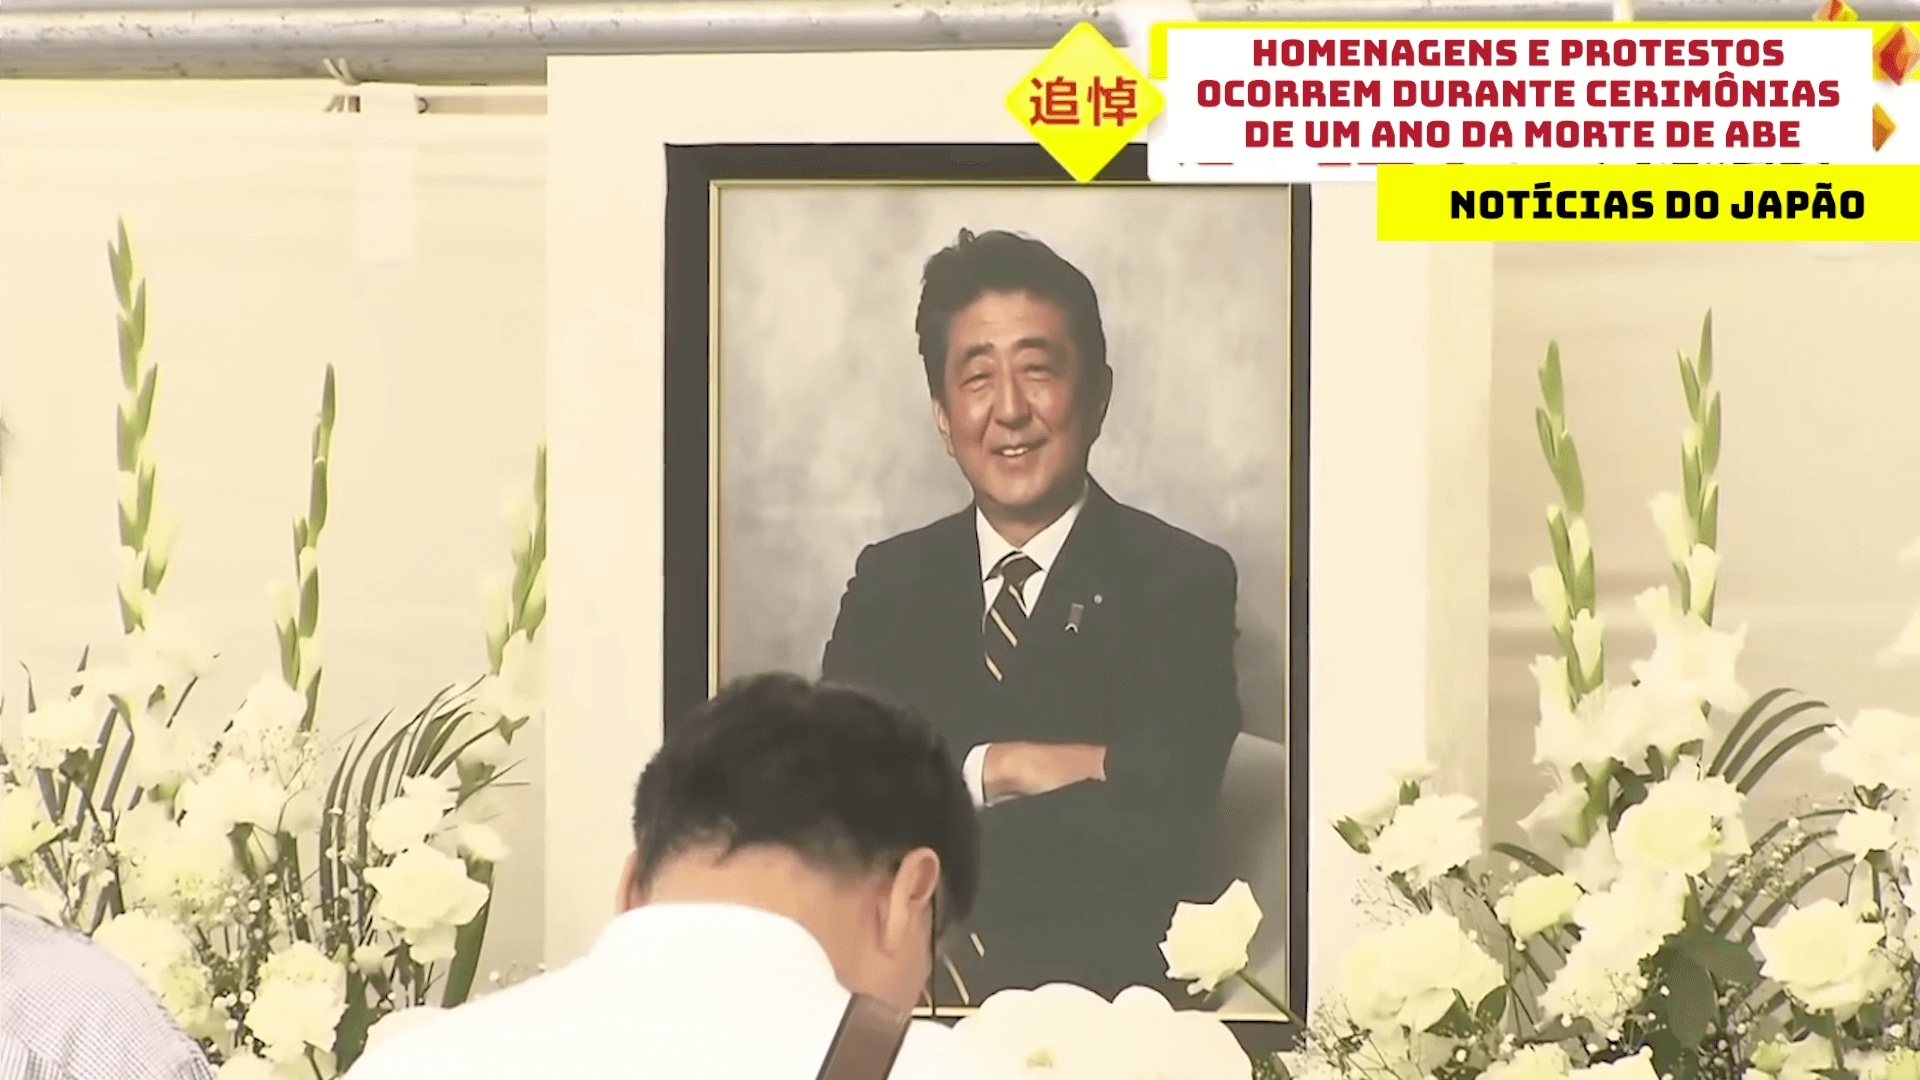 Homenagens e protestos ocorrem durante cerimônias de um ano da morte de Abe 